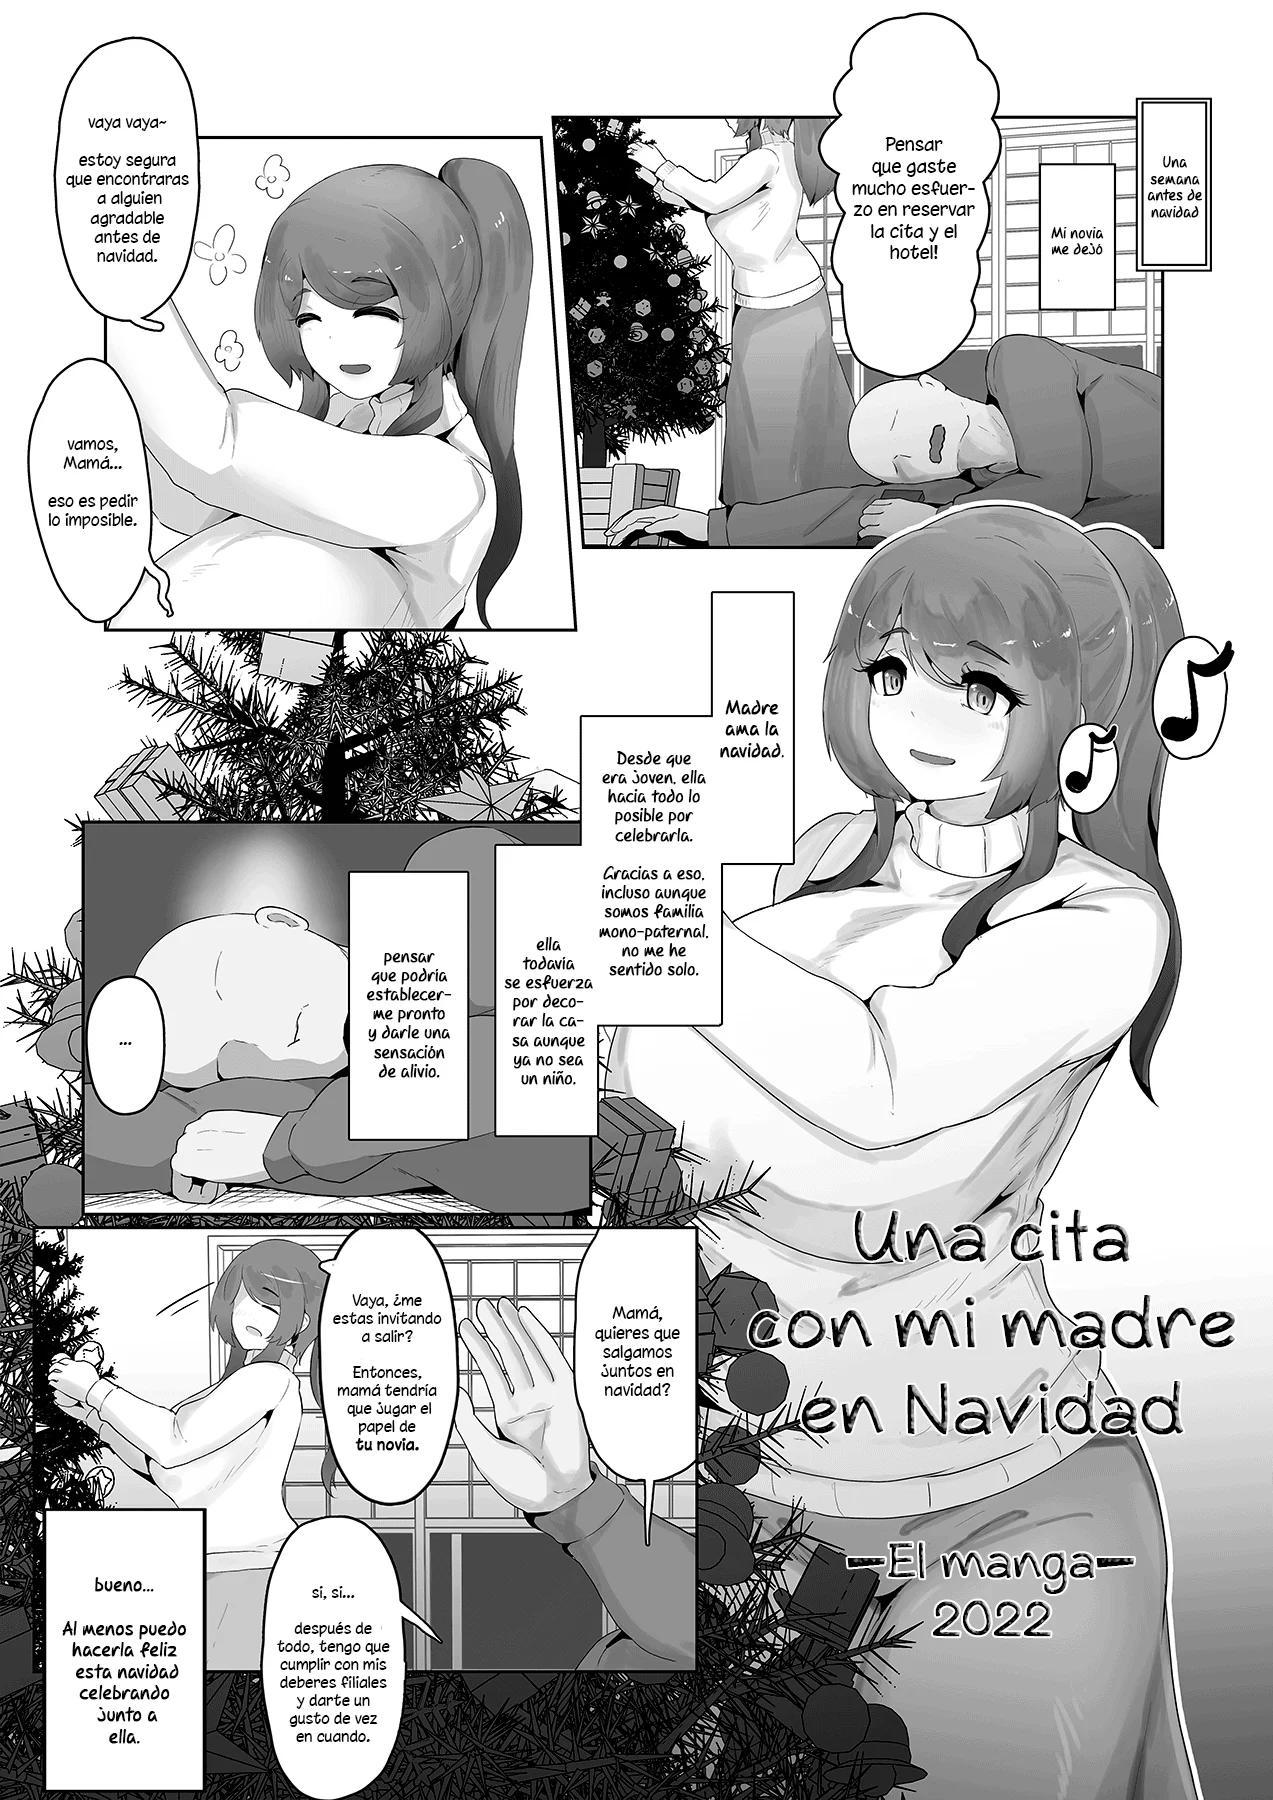 Una cita con mi madre en Navidad El manga 2022 - 0